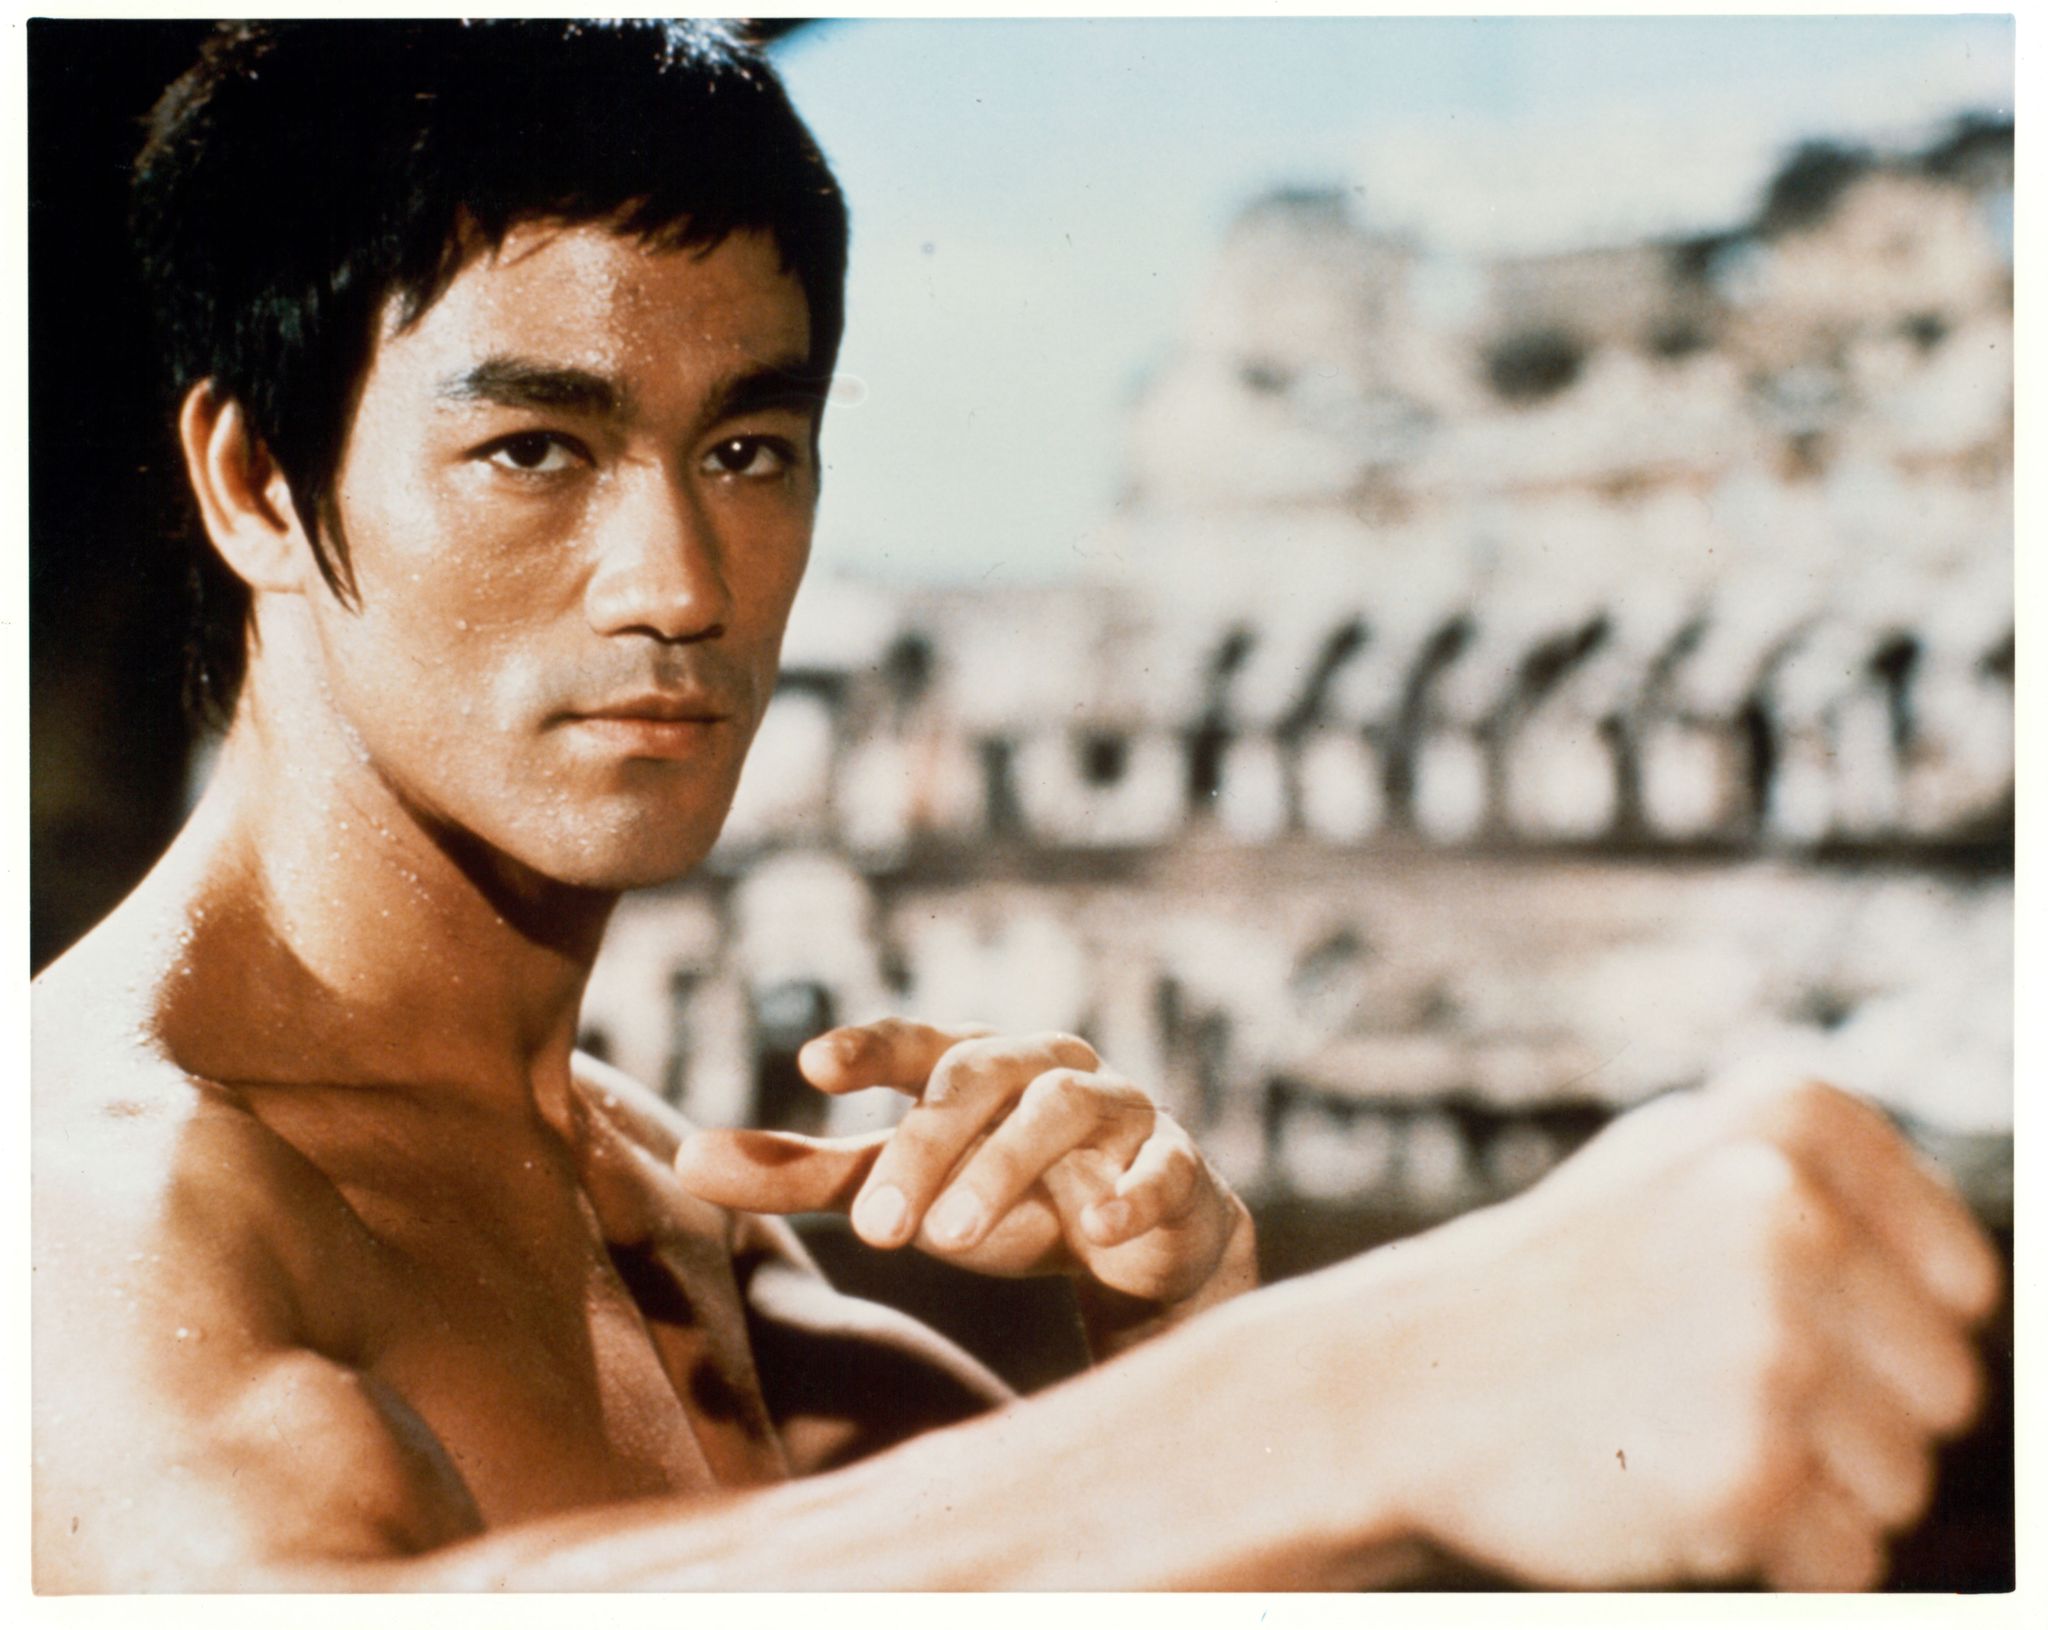 Warrior  Série criada por Bruce Lee contrata seu protagonista